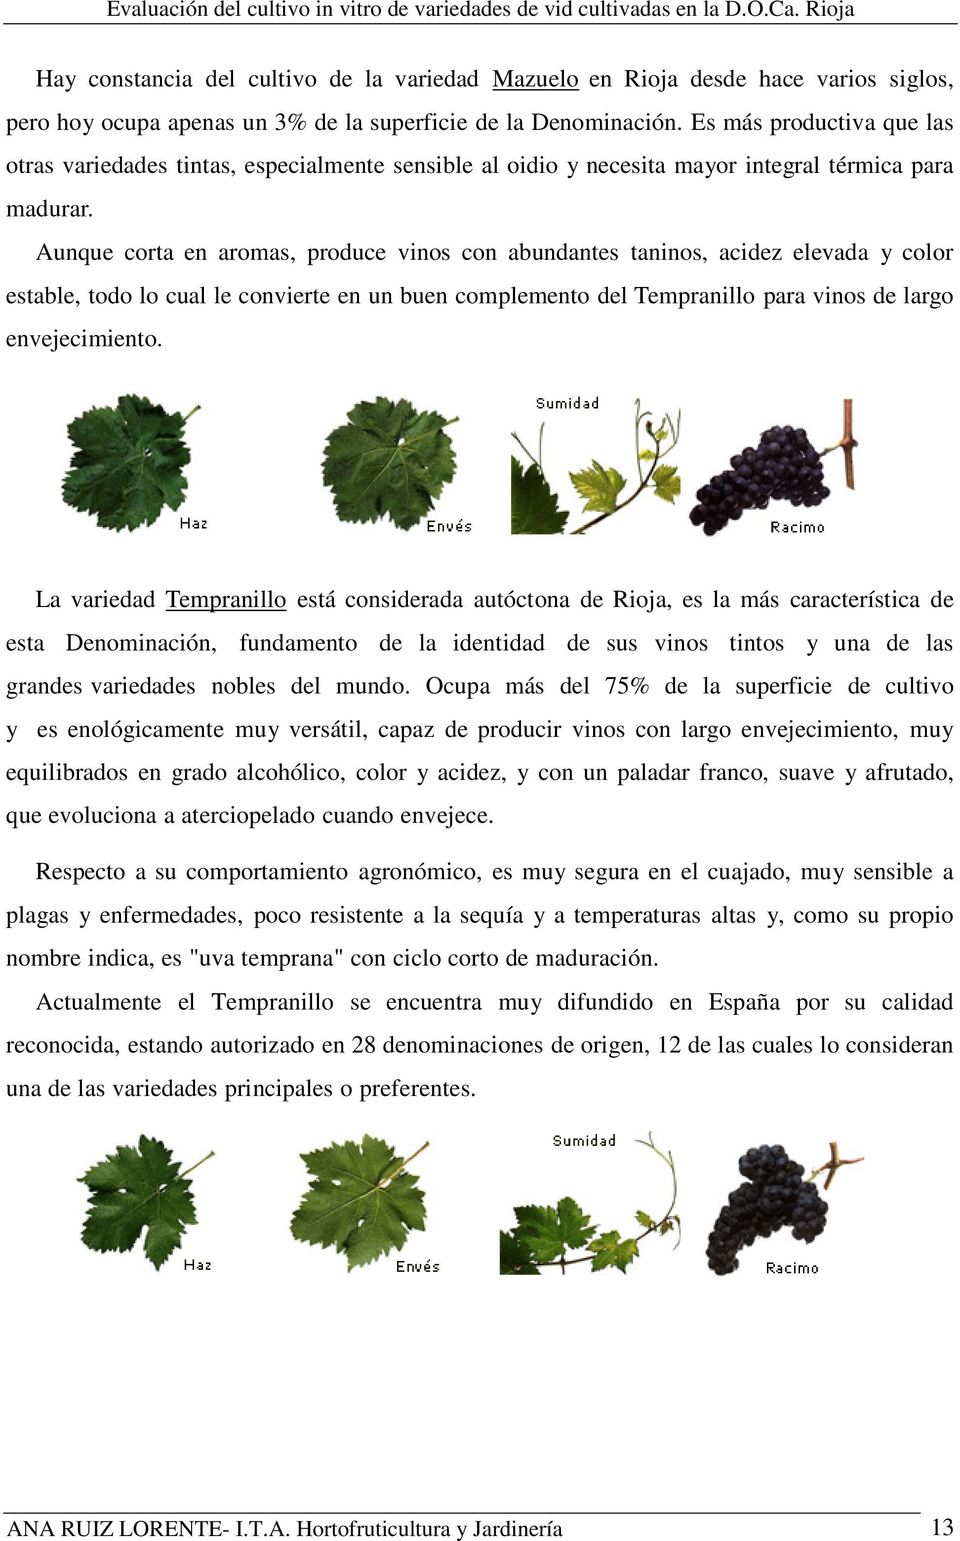 Aunque corta en aromas, produce vinos con abundantes taninos, acidez elevada y color estable, todo lo cual le convierte en un buen complemento del Tempranillo para vinos de largo envejecimiento.